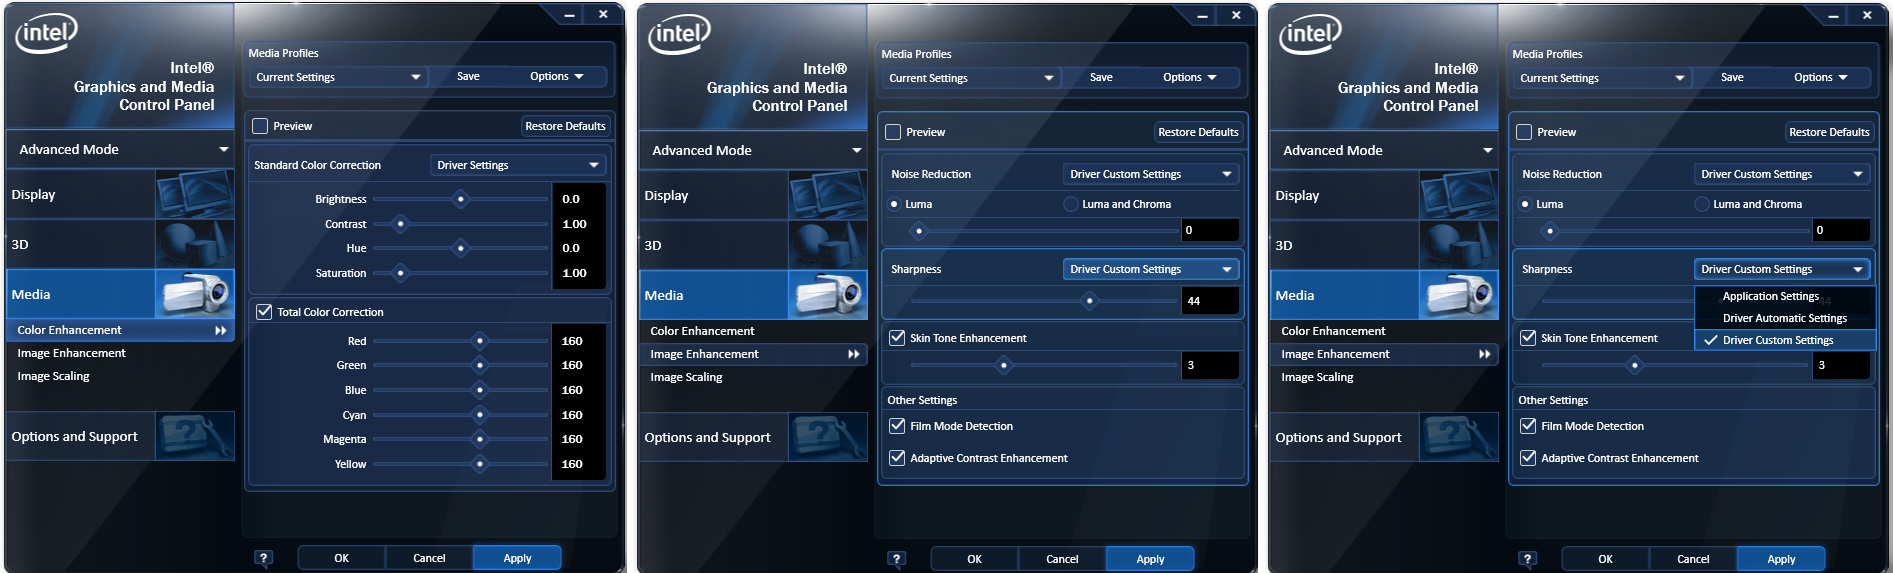 Интел график панель. Параметры графики Интел. Intel приложение. Панель управления графикой и Медиа Intel. Intel программа.